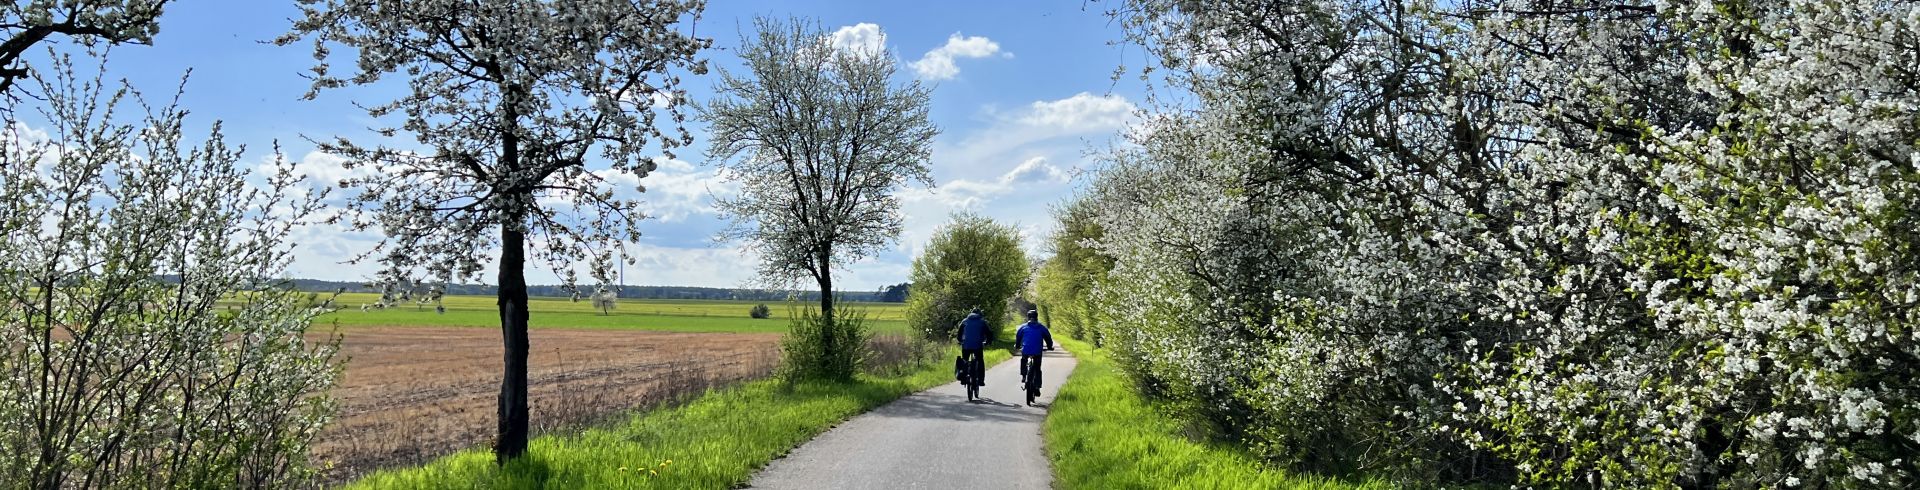 Asphaltradweg, blühende Obstbäume rechts und links, in der Ferne zwei Radfahrer